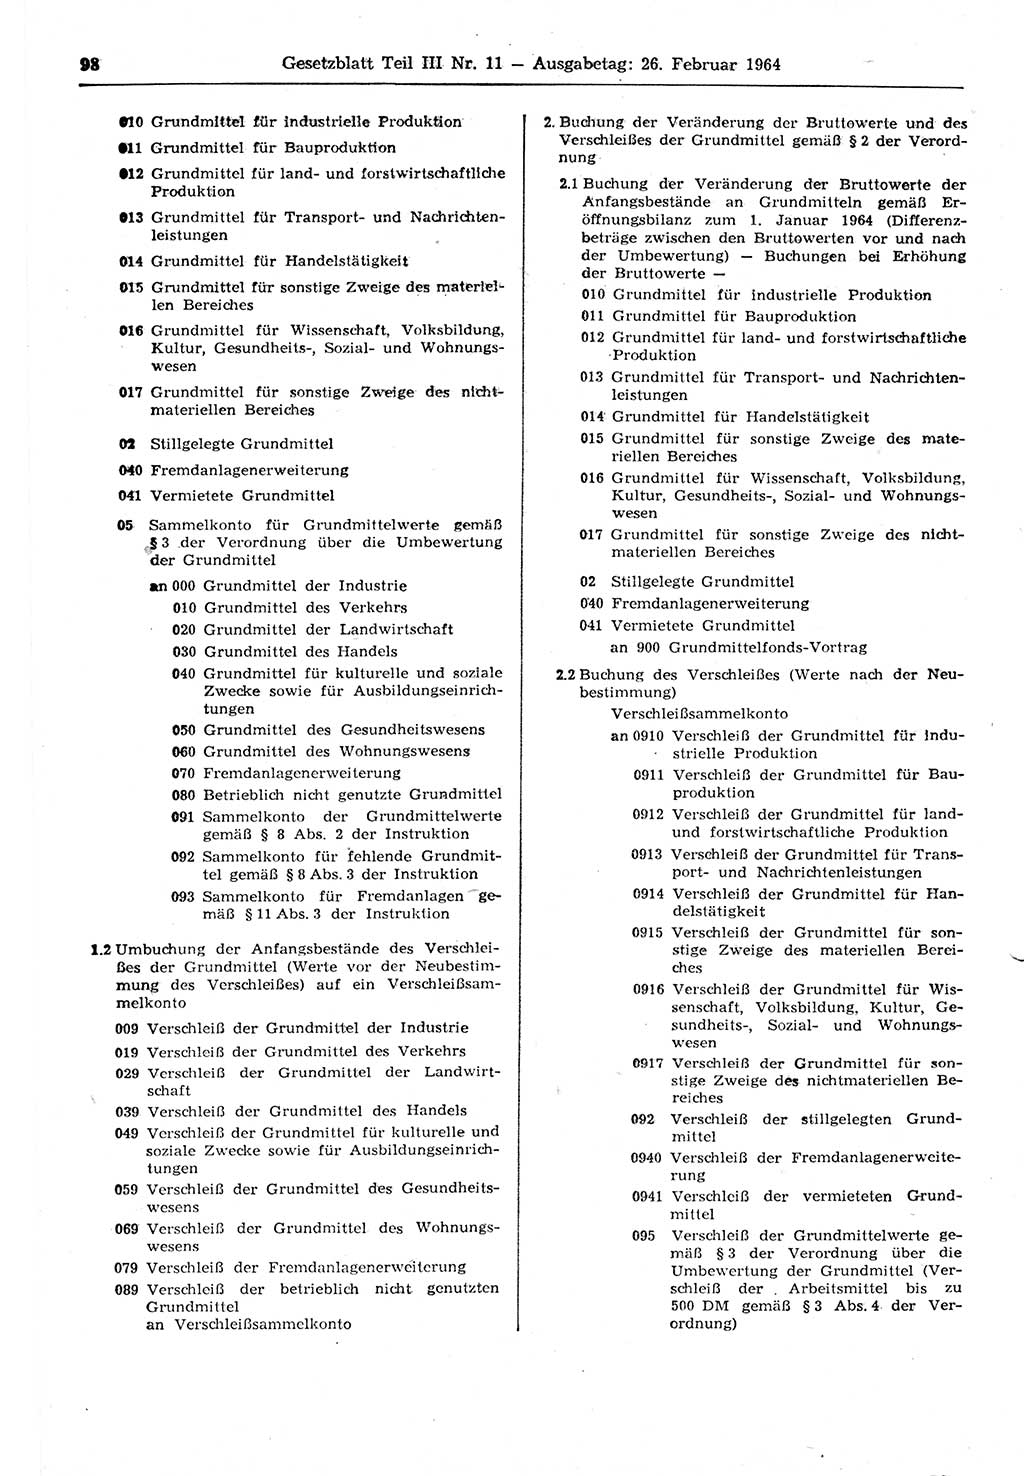 Gesetzblatt (GBl.) der Deutschen Demokratischen Republik (DDR) Teil ⅠⅠⅠ 1964, Seite 98 (GBl. DDR ⅠⅠⅠ 1964, S. 98)